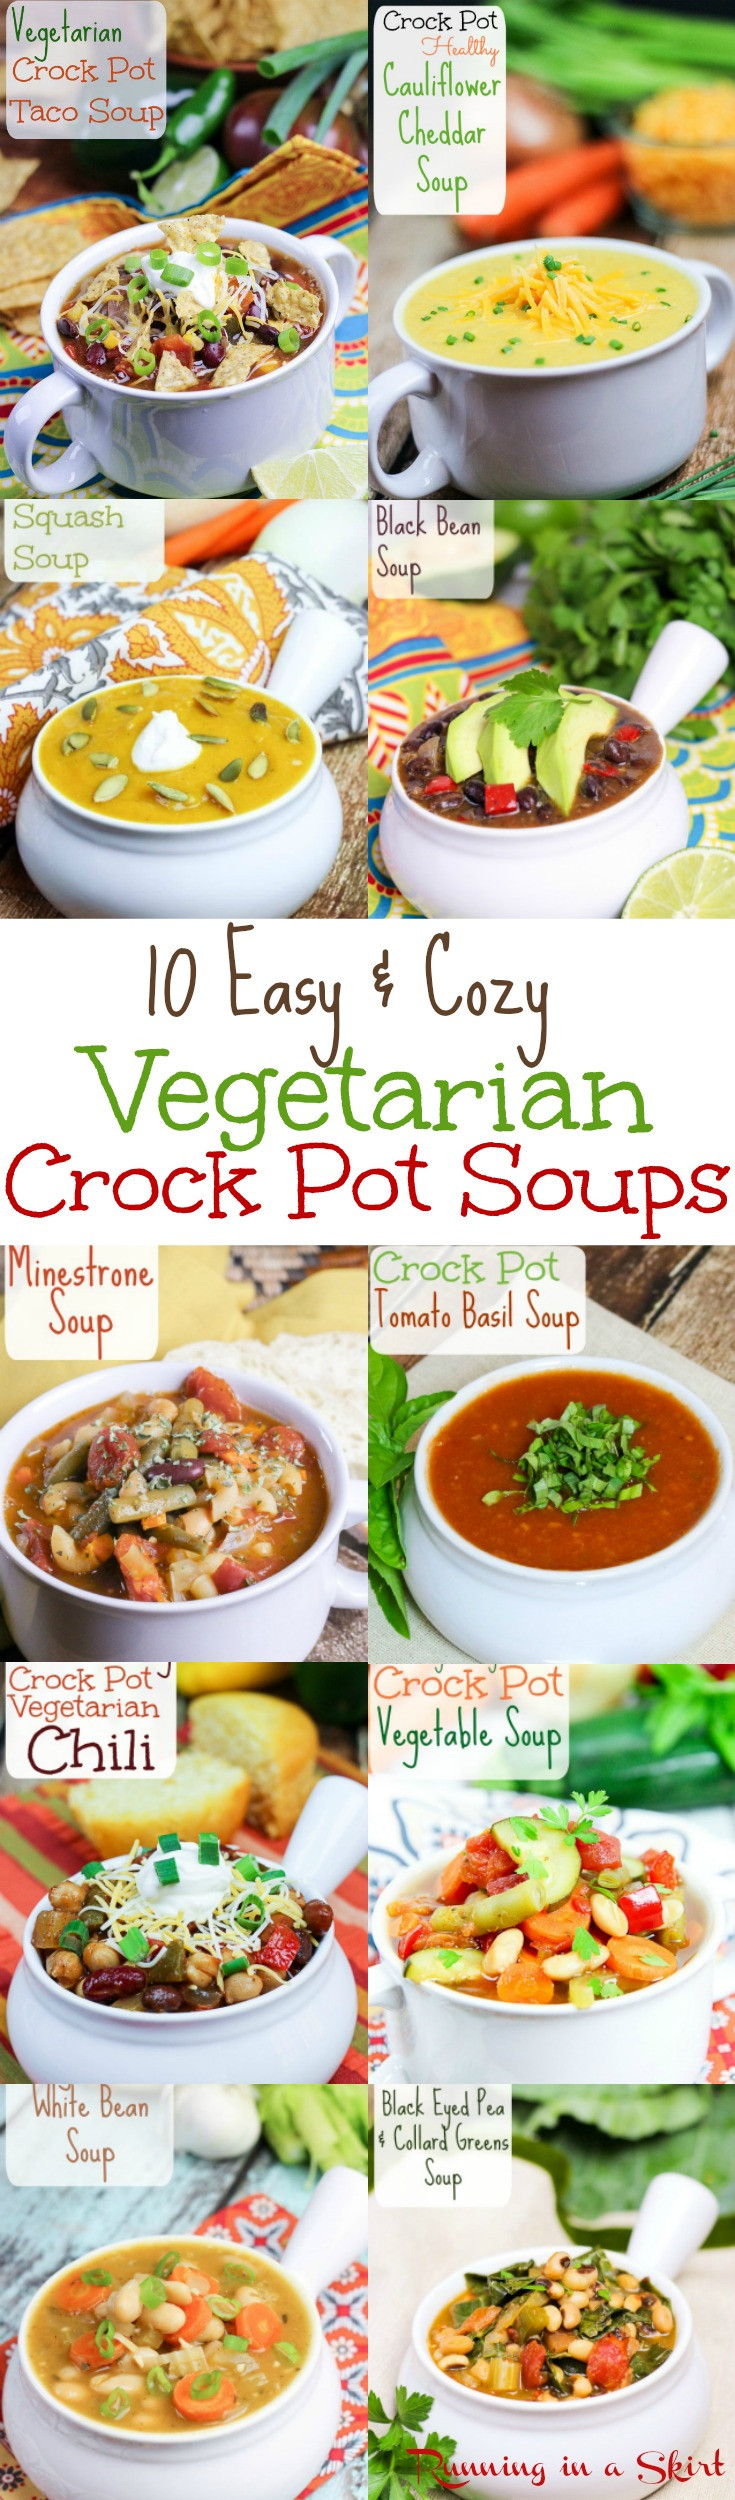 Easy Vegetarian Crock Pot Recipes
 10 Cozy Ve arian Crock Pot Soup recipes